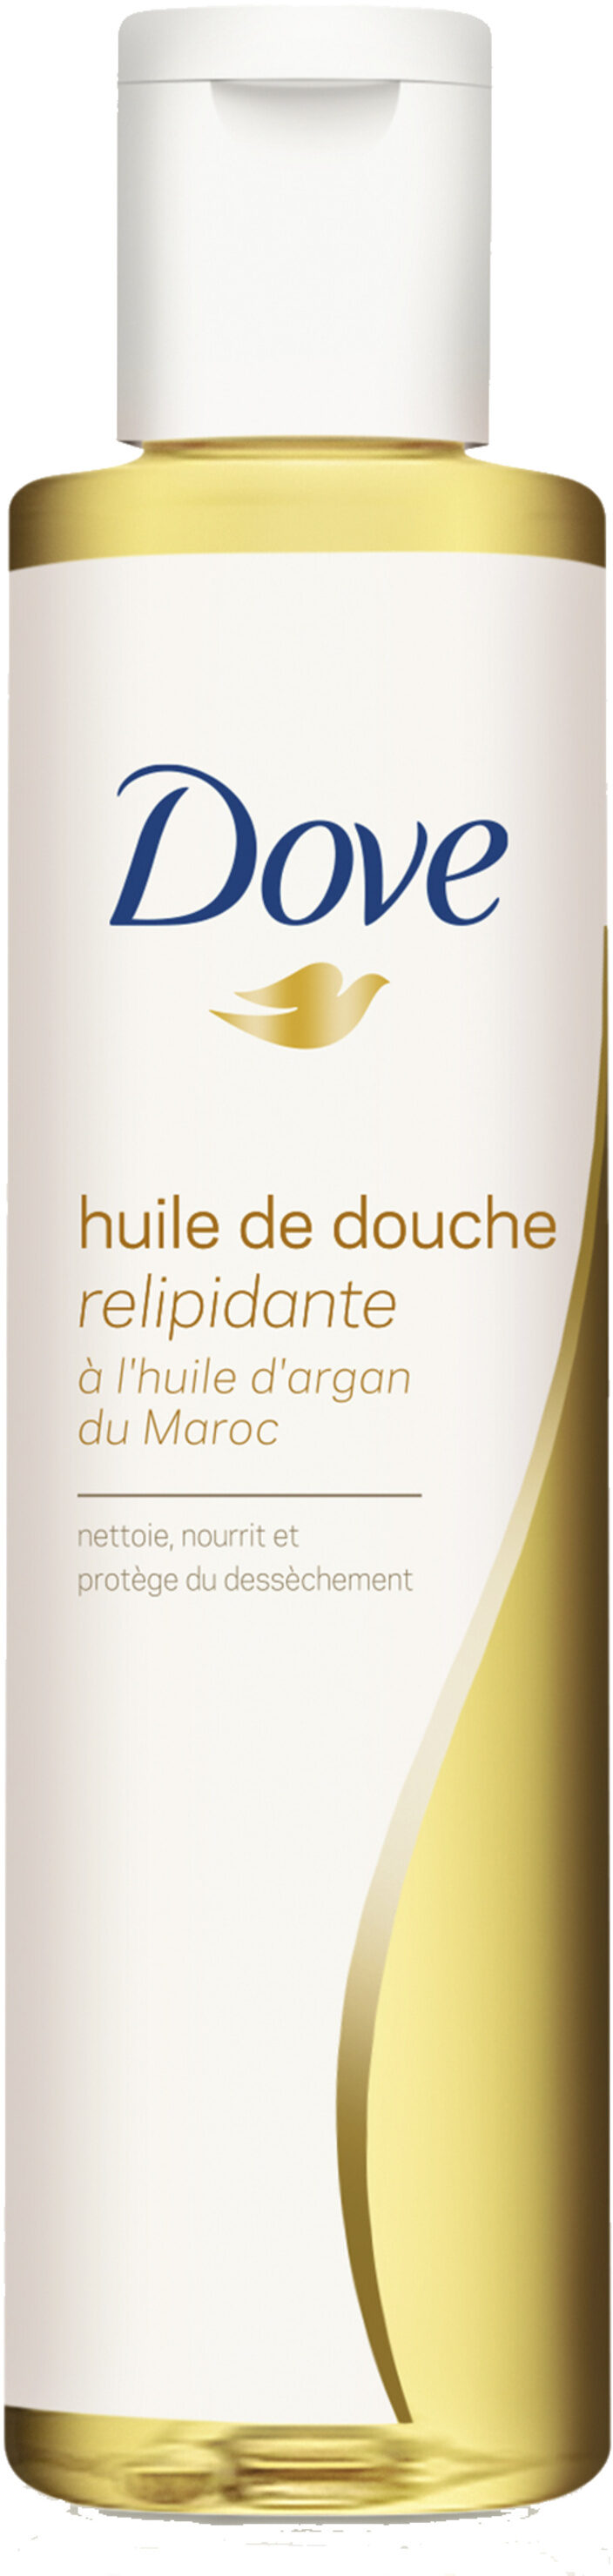 Dove Huile de Douche Relipidante Huile d'Argan du Maroc - Product - fr